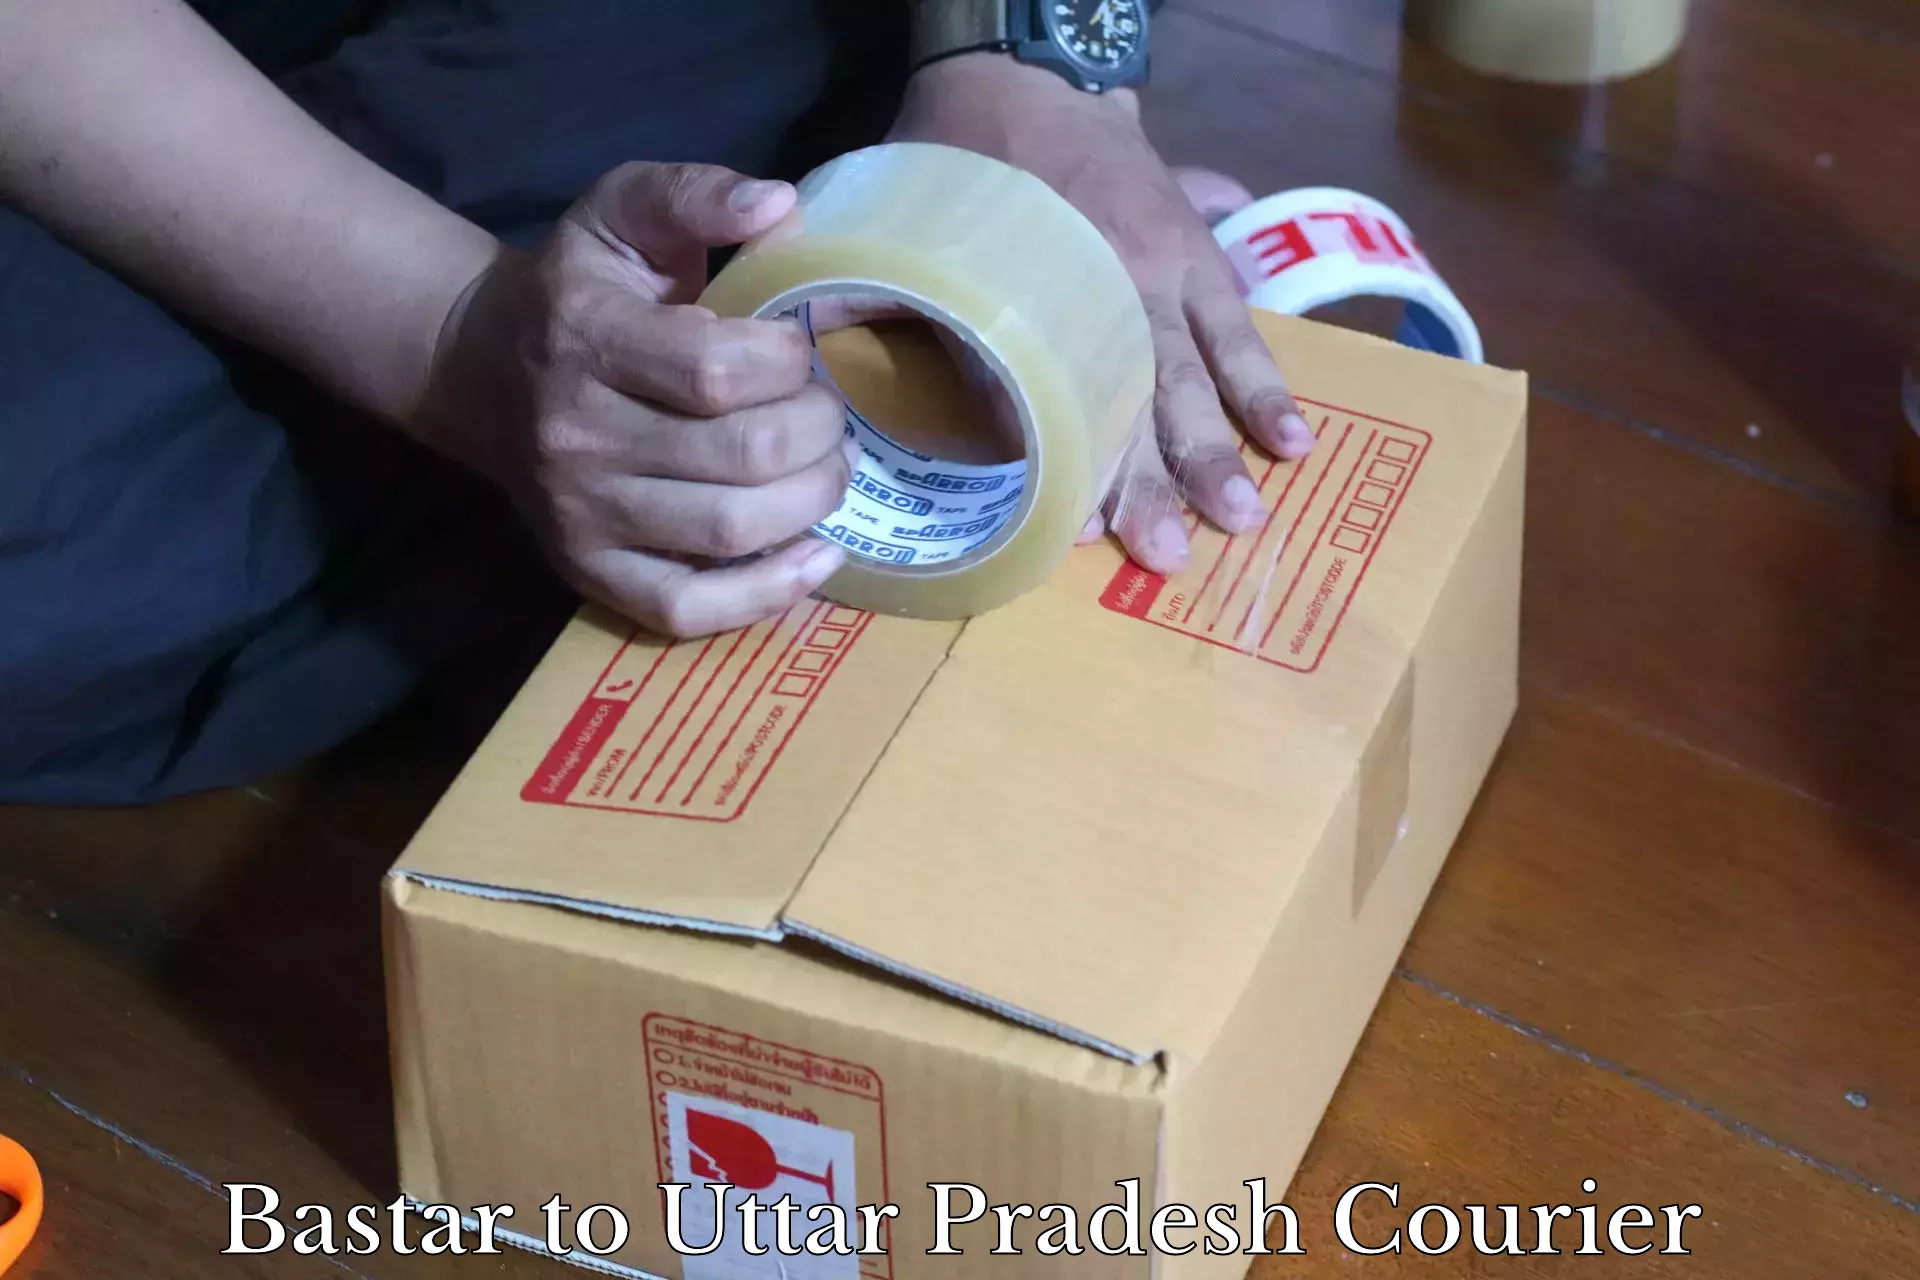 High-speed parcel service Bastar to Uttar Pradesh